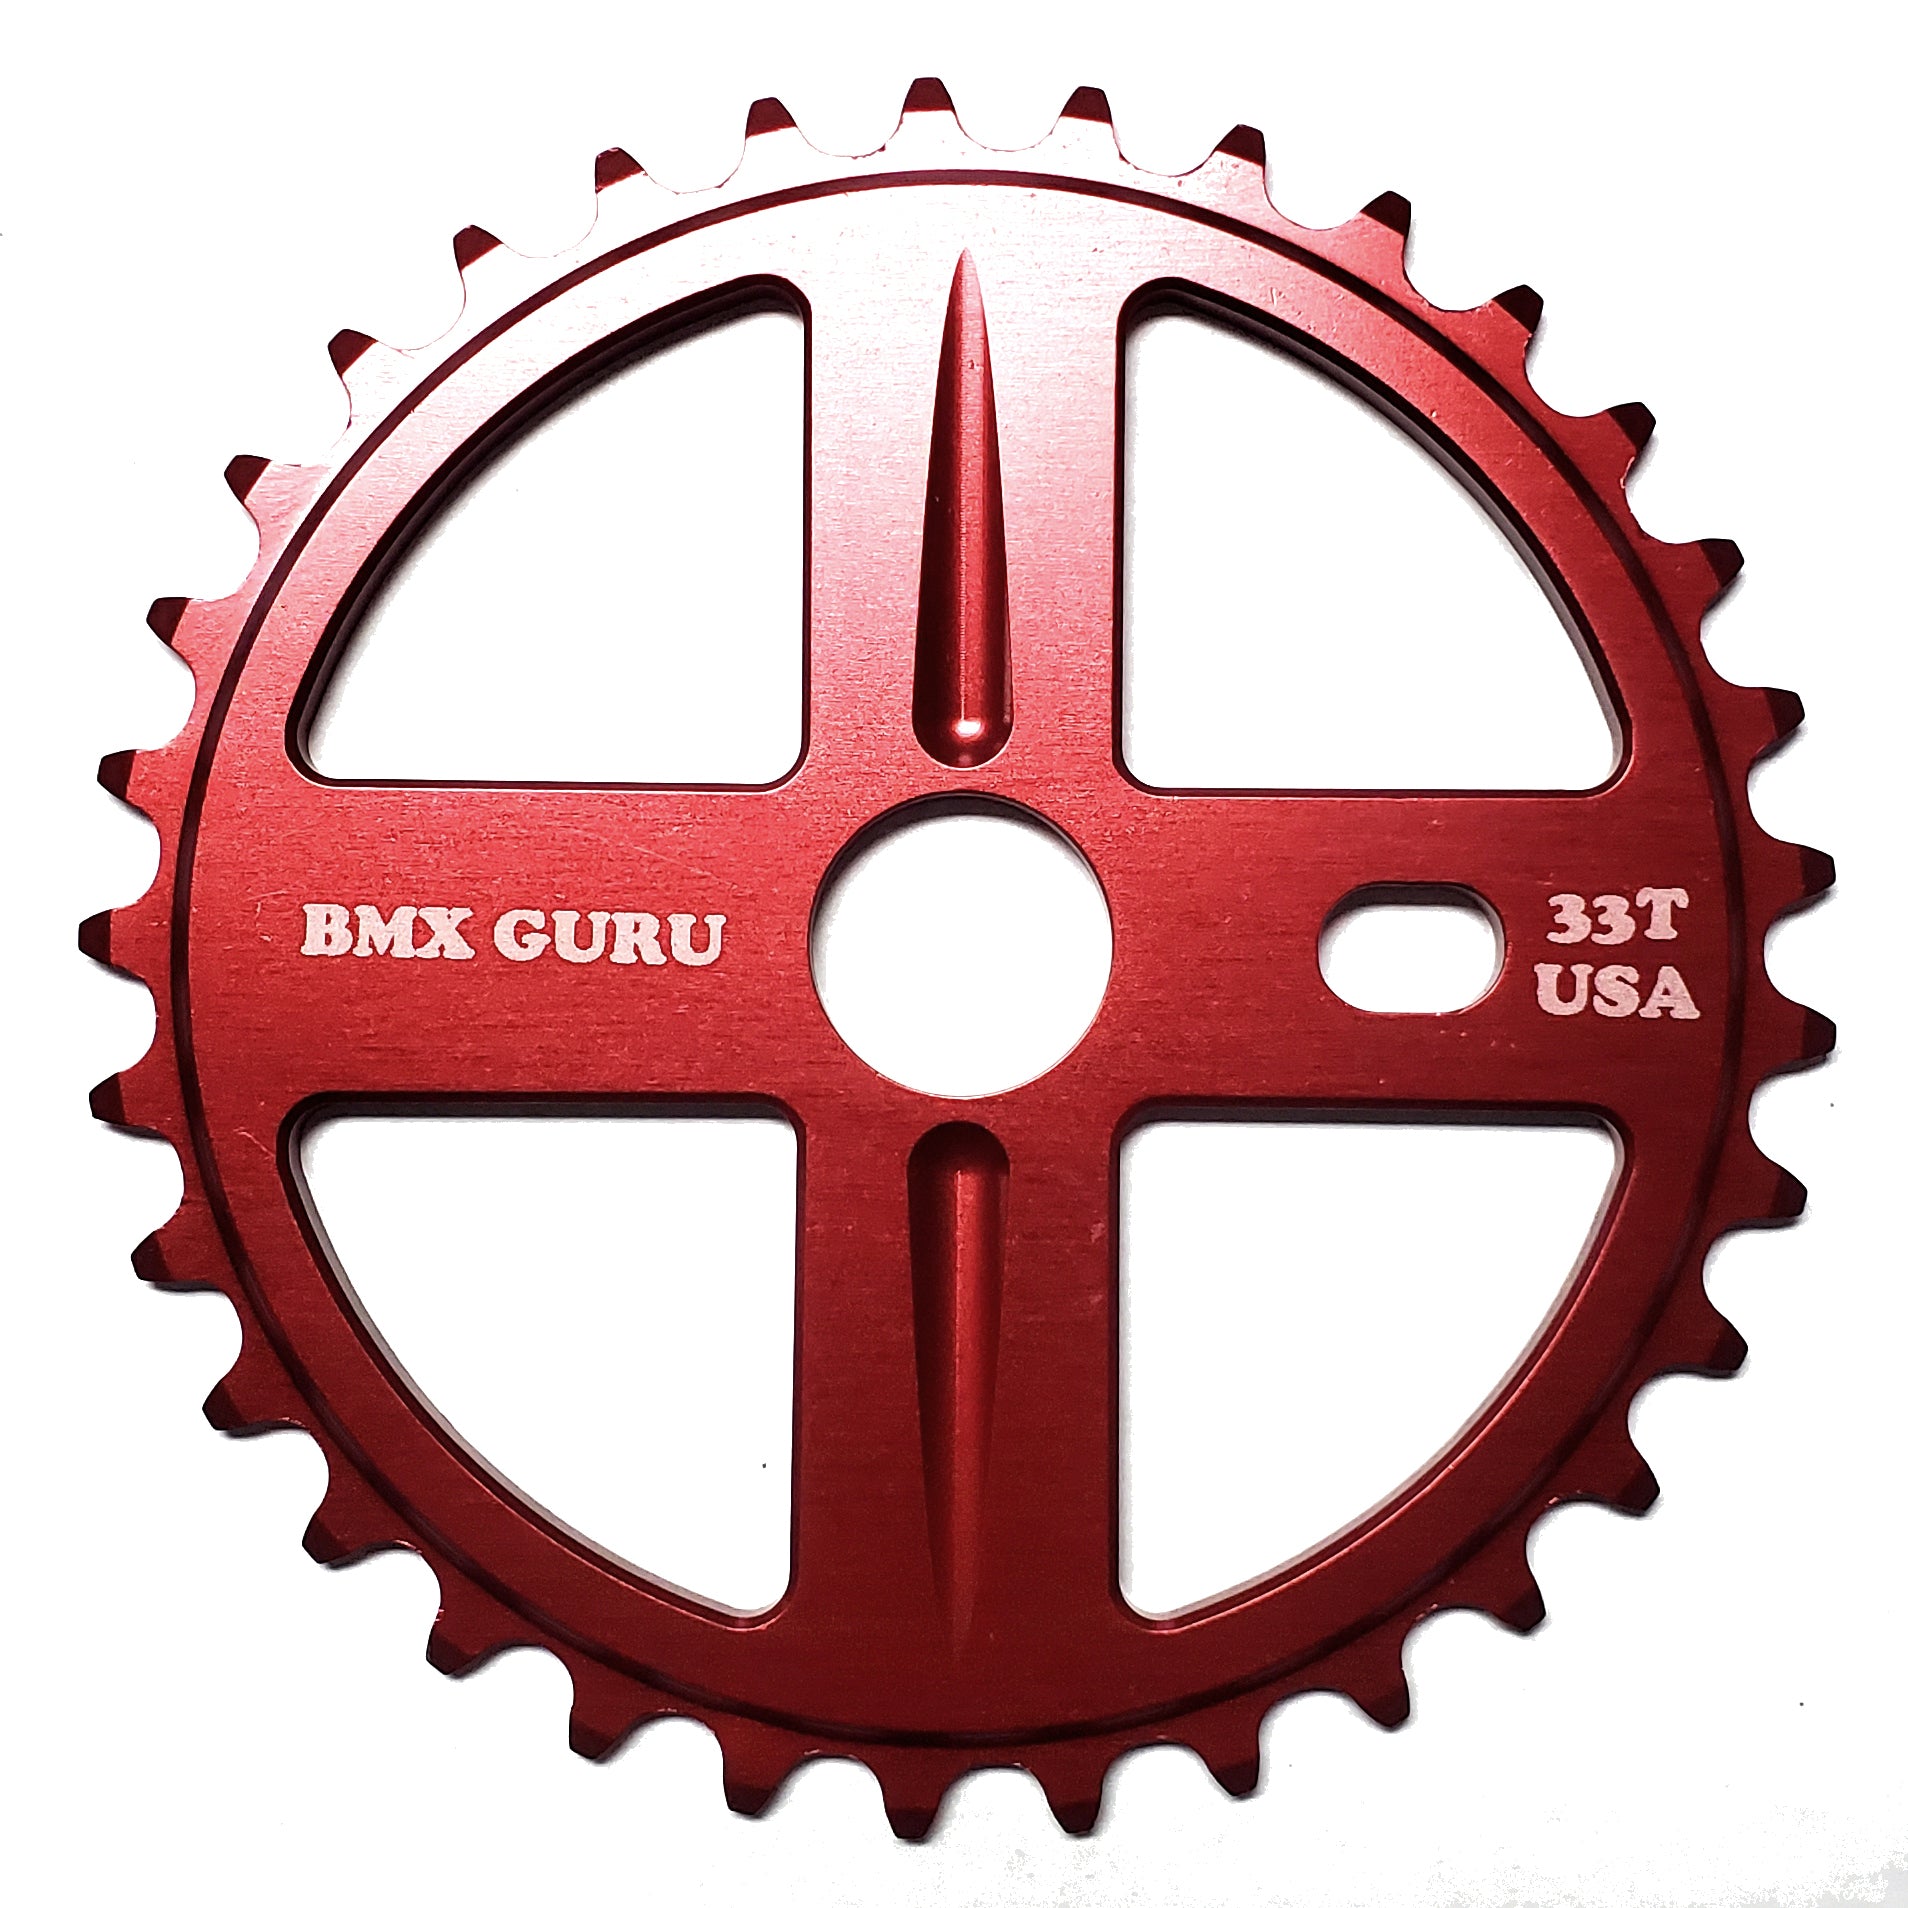 BMXGuru 33t Bolt Drive BMX Aluminum Sprocket / Chainwheel - Red - USA Made